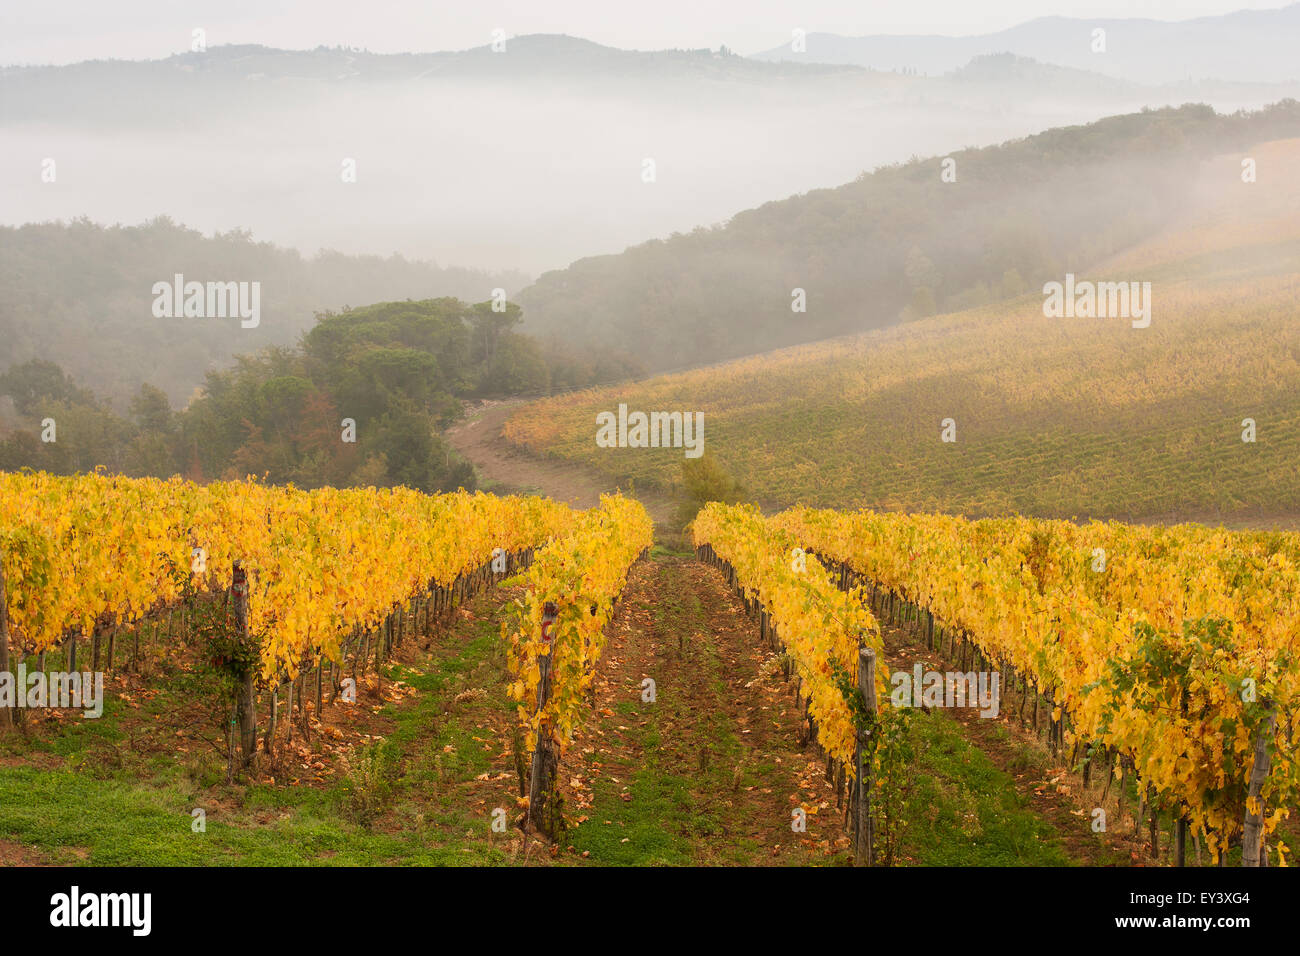 Vue sur un vignoble en automne, brouillard passant et les montagnes au loin. Banque D'Images